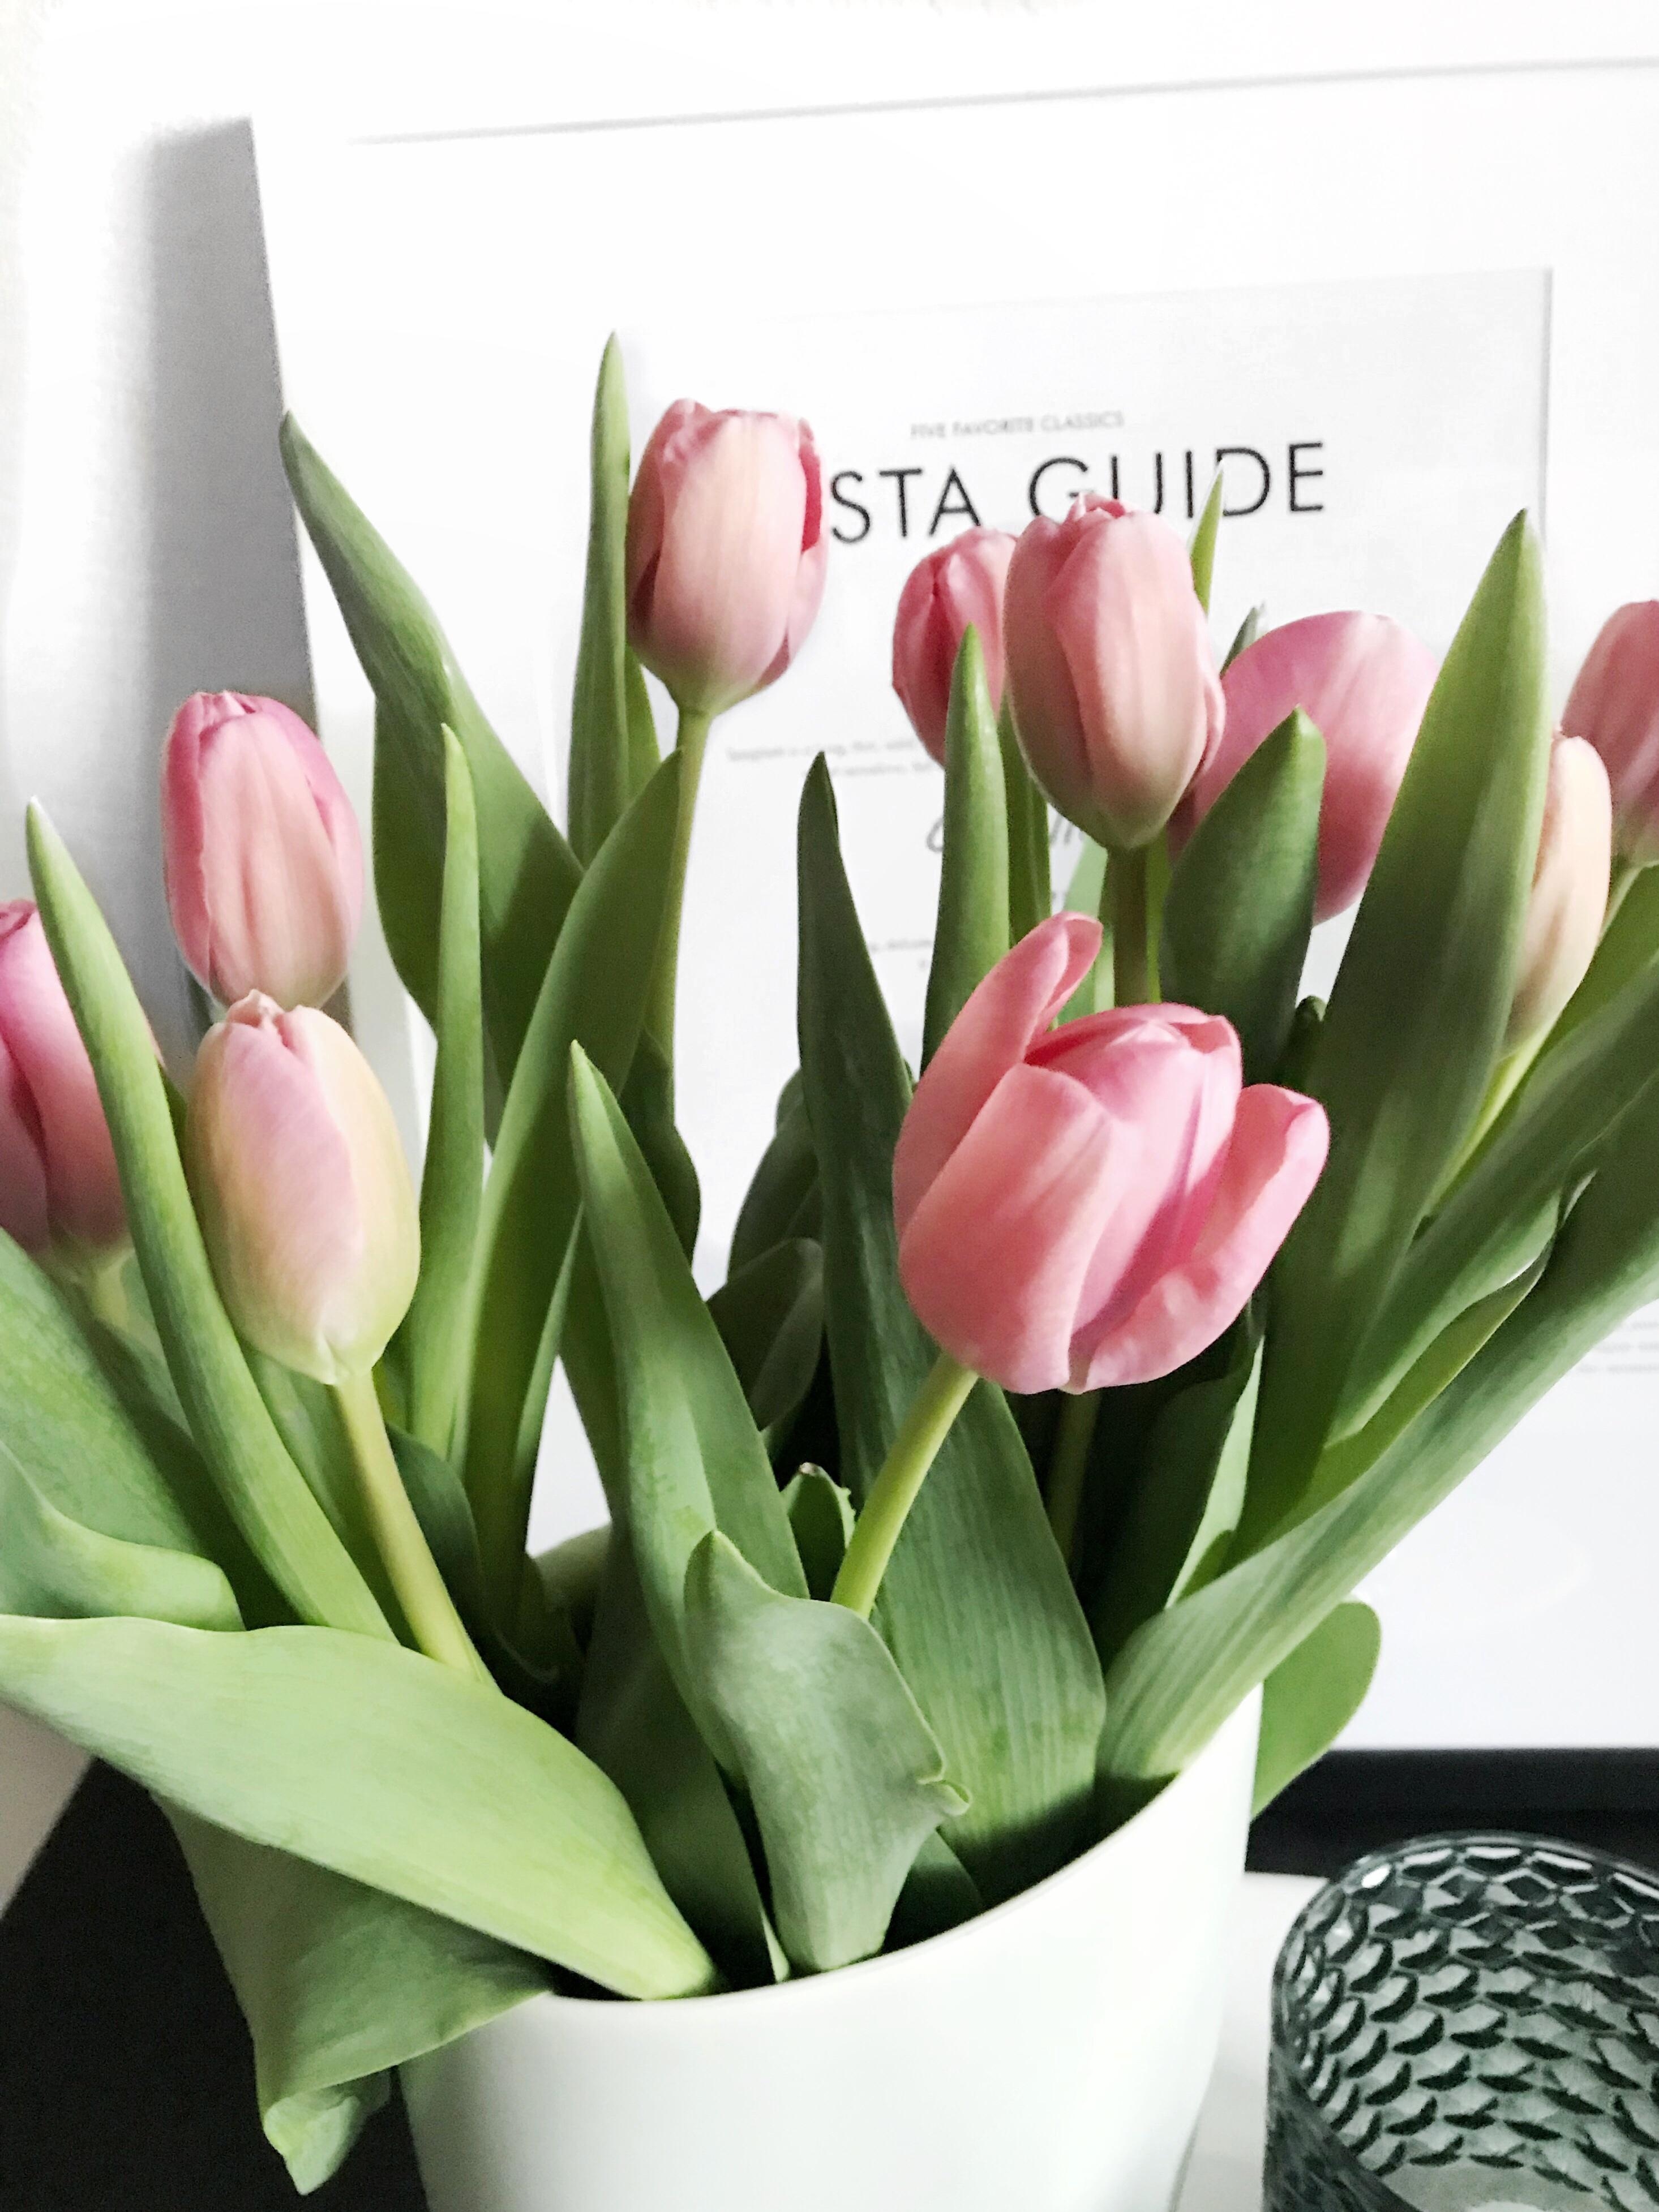 Ein bisschen Frühling für die Wohnung. #freshflowerfriday #blumen #tulpen #vase #bild #weiss #deko #schnittblumen